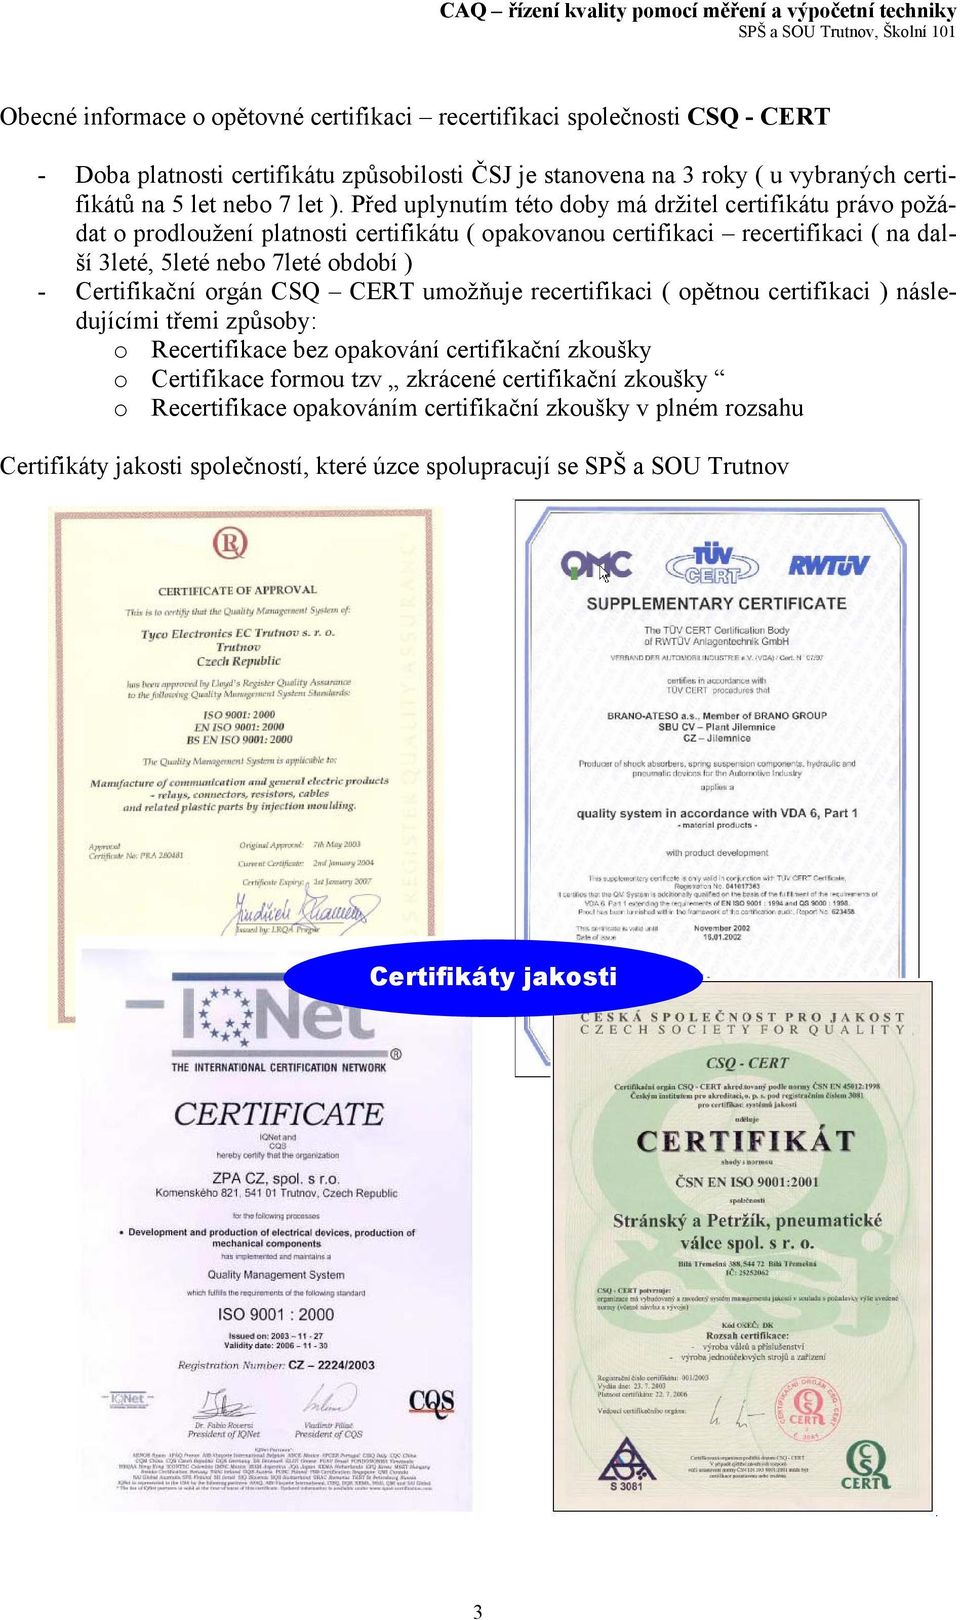 Před uplynutím této doby má držitel certifikátu právo požádat o prodloužení platnosti certifikátu ( opakovanou certifikaci recertifikaci ( na další 3leté, 5leté nebo 7leté období ) -